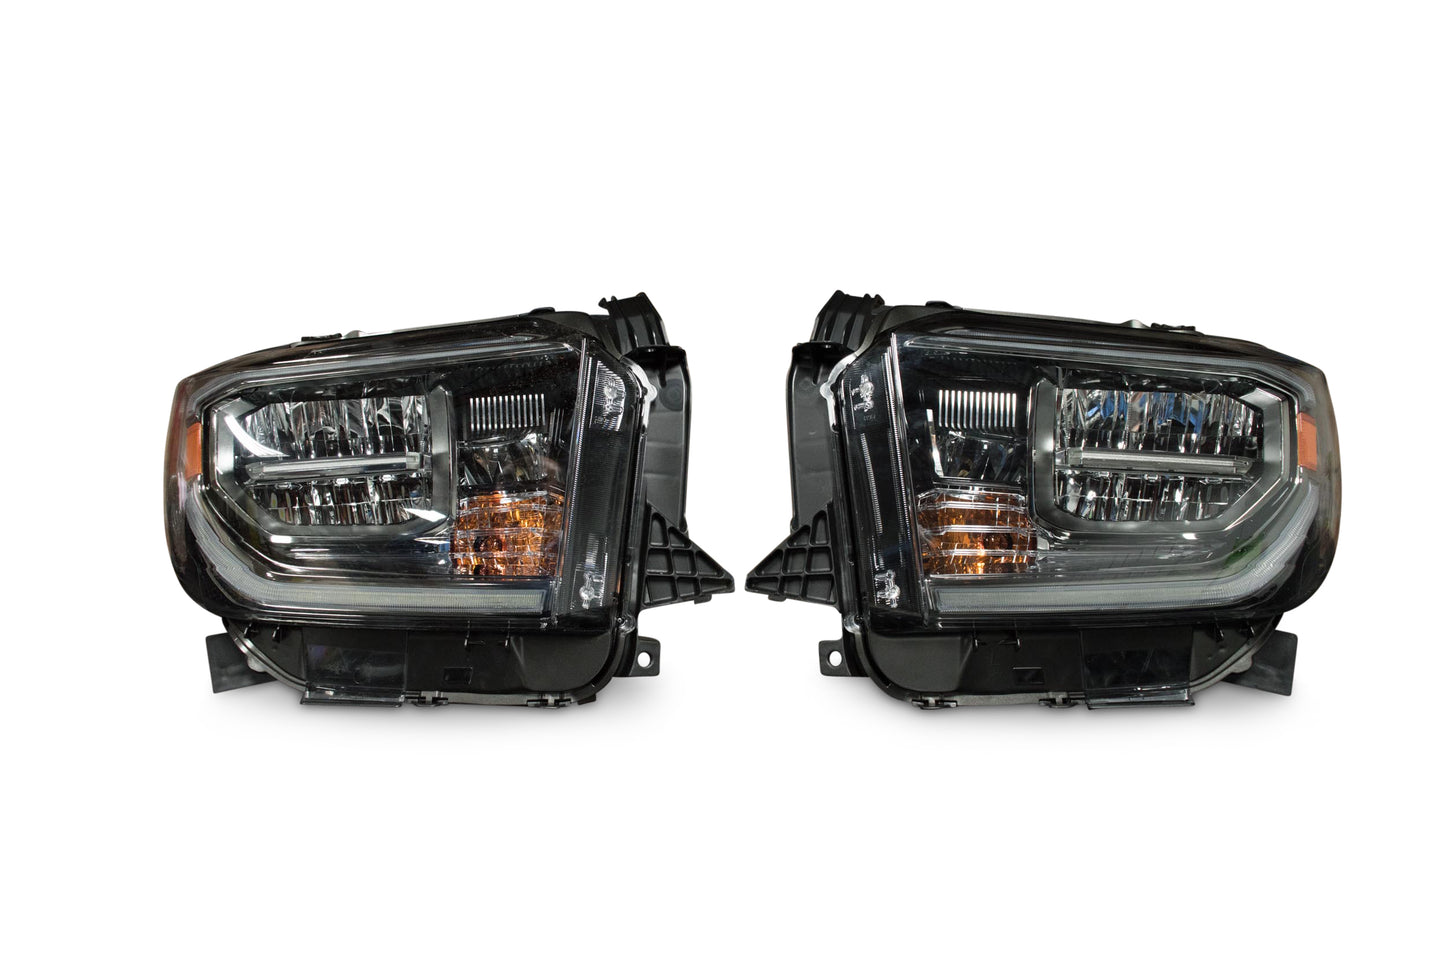 OEM LED Headlights: Toyota Tundra (18+) (Gunmetal / Left)